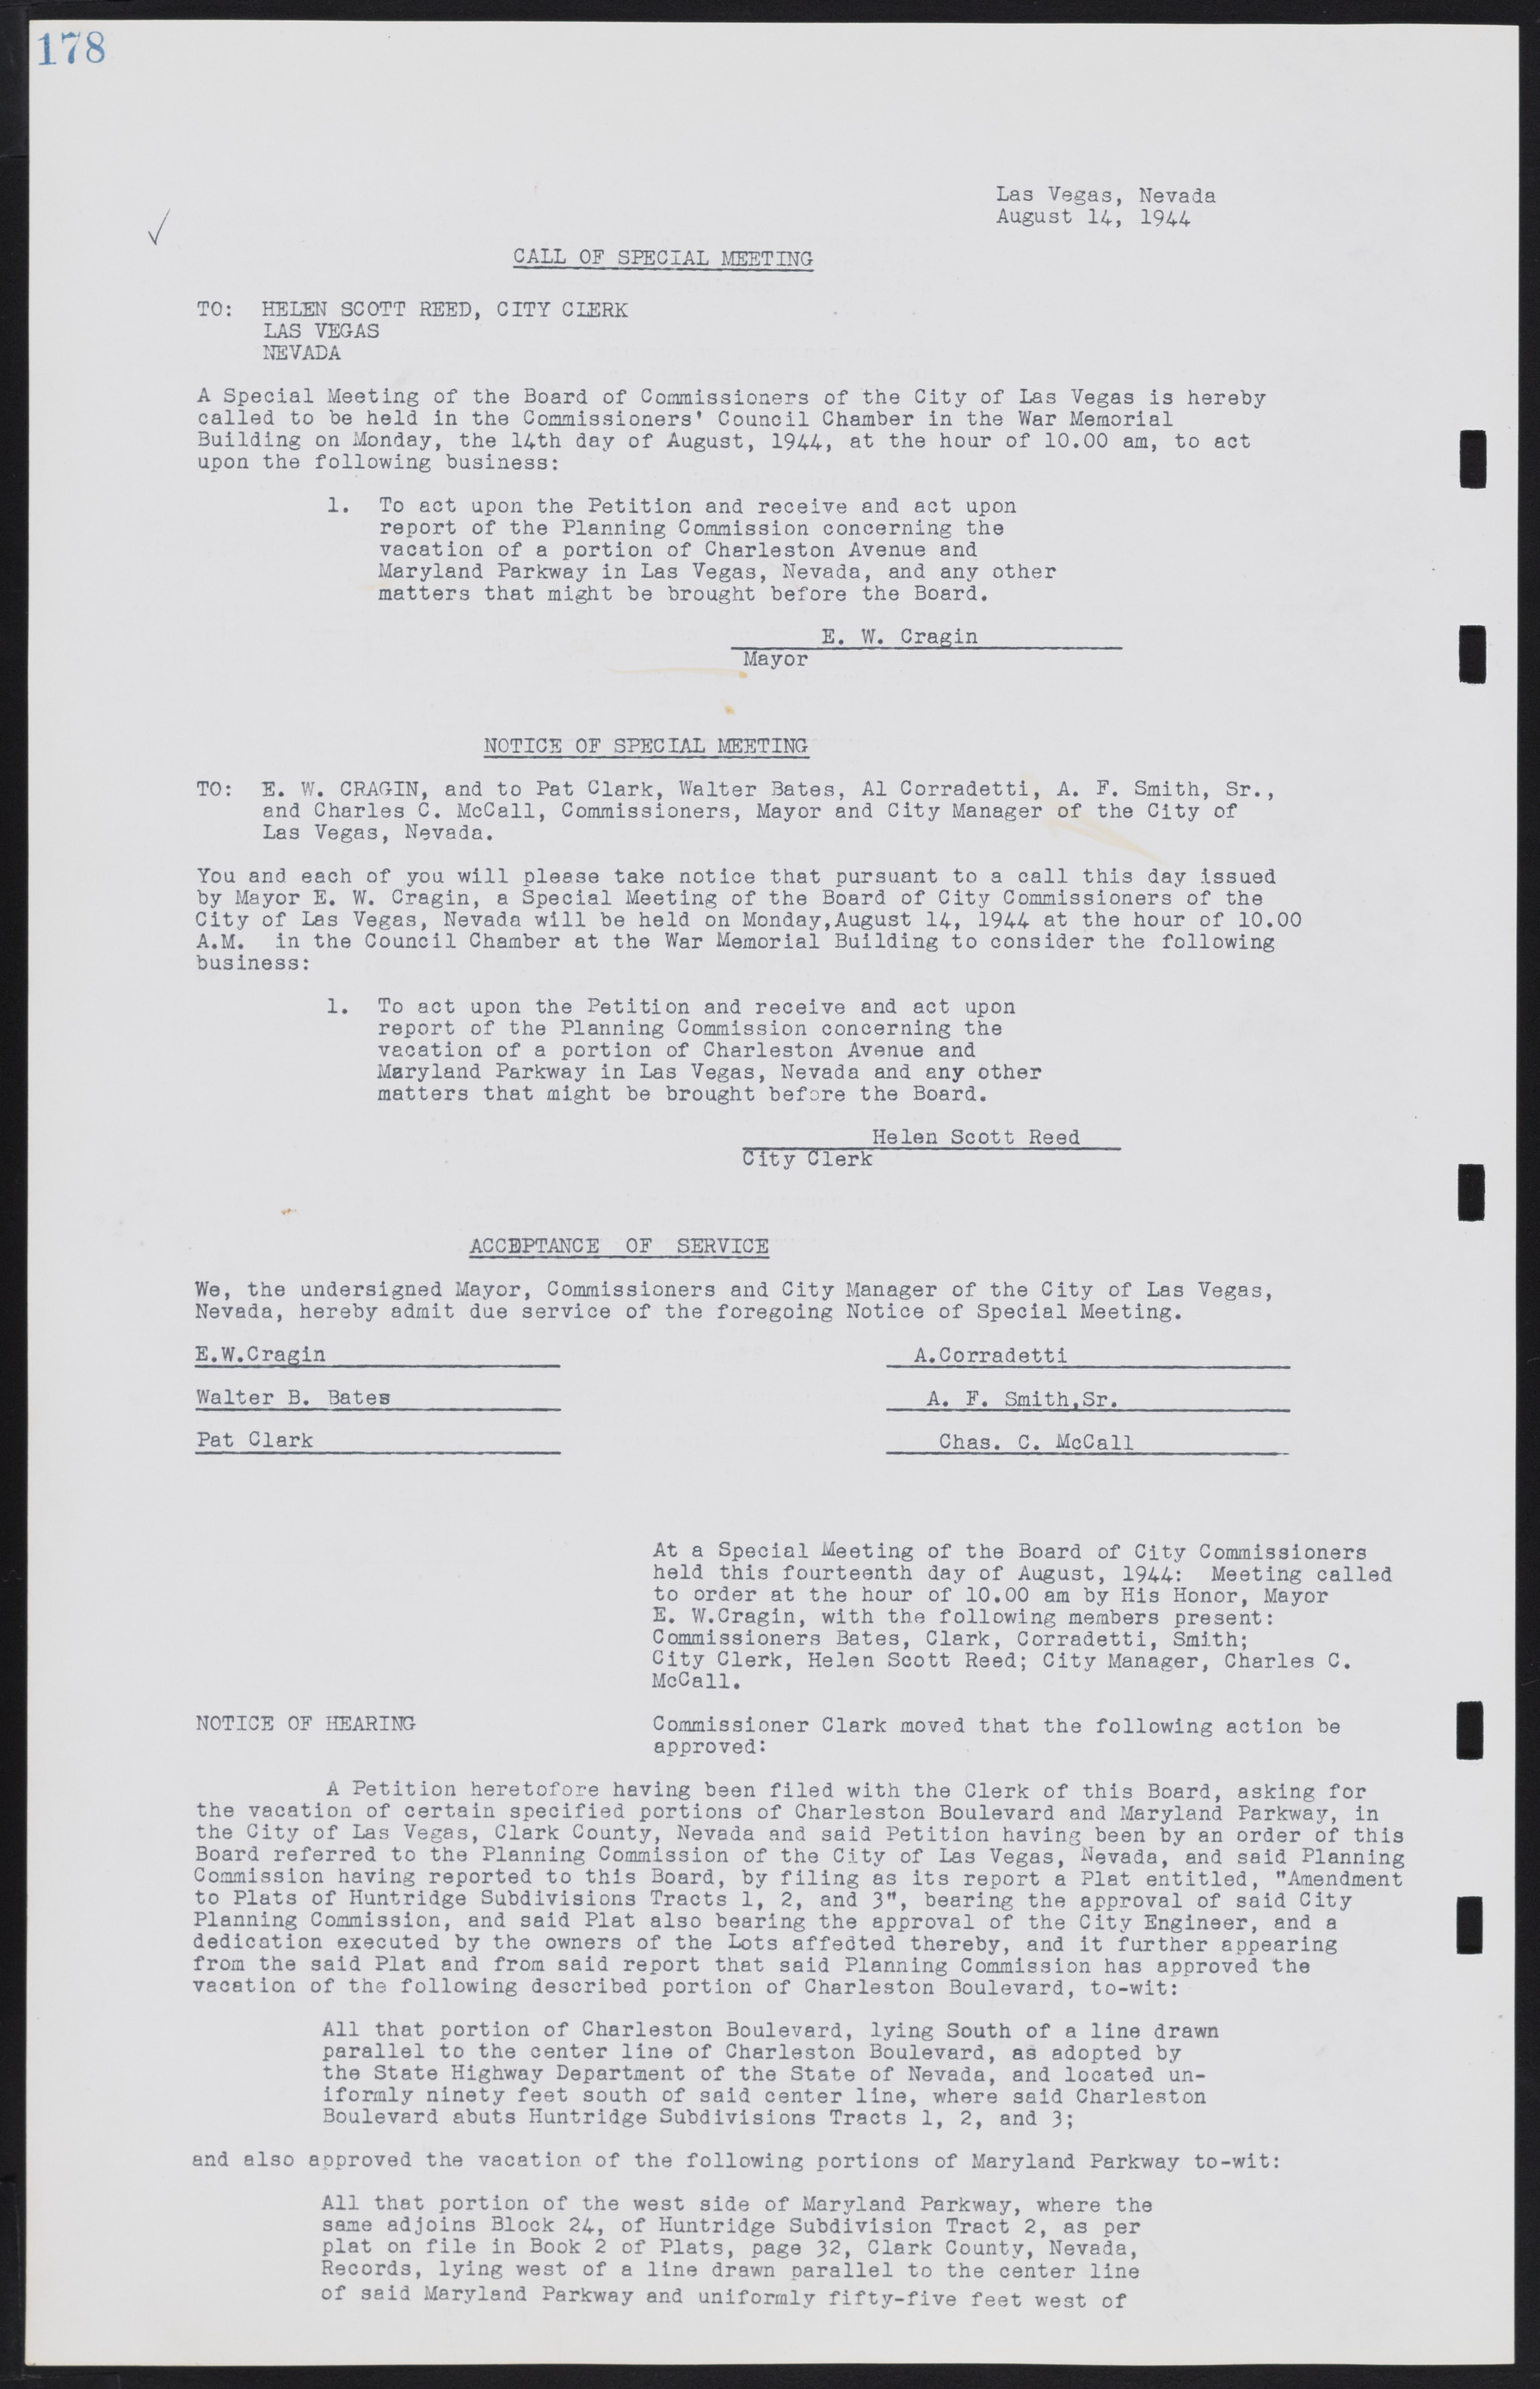 Las Vegas City Commission Minutes, August 11, 1942 to December 30, 1946, lvc000005-197